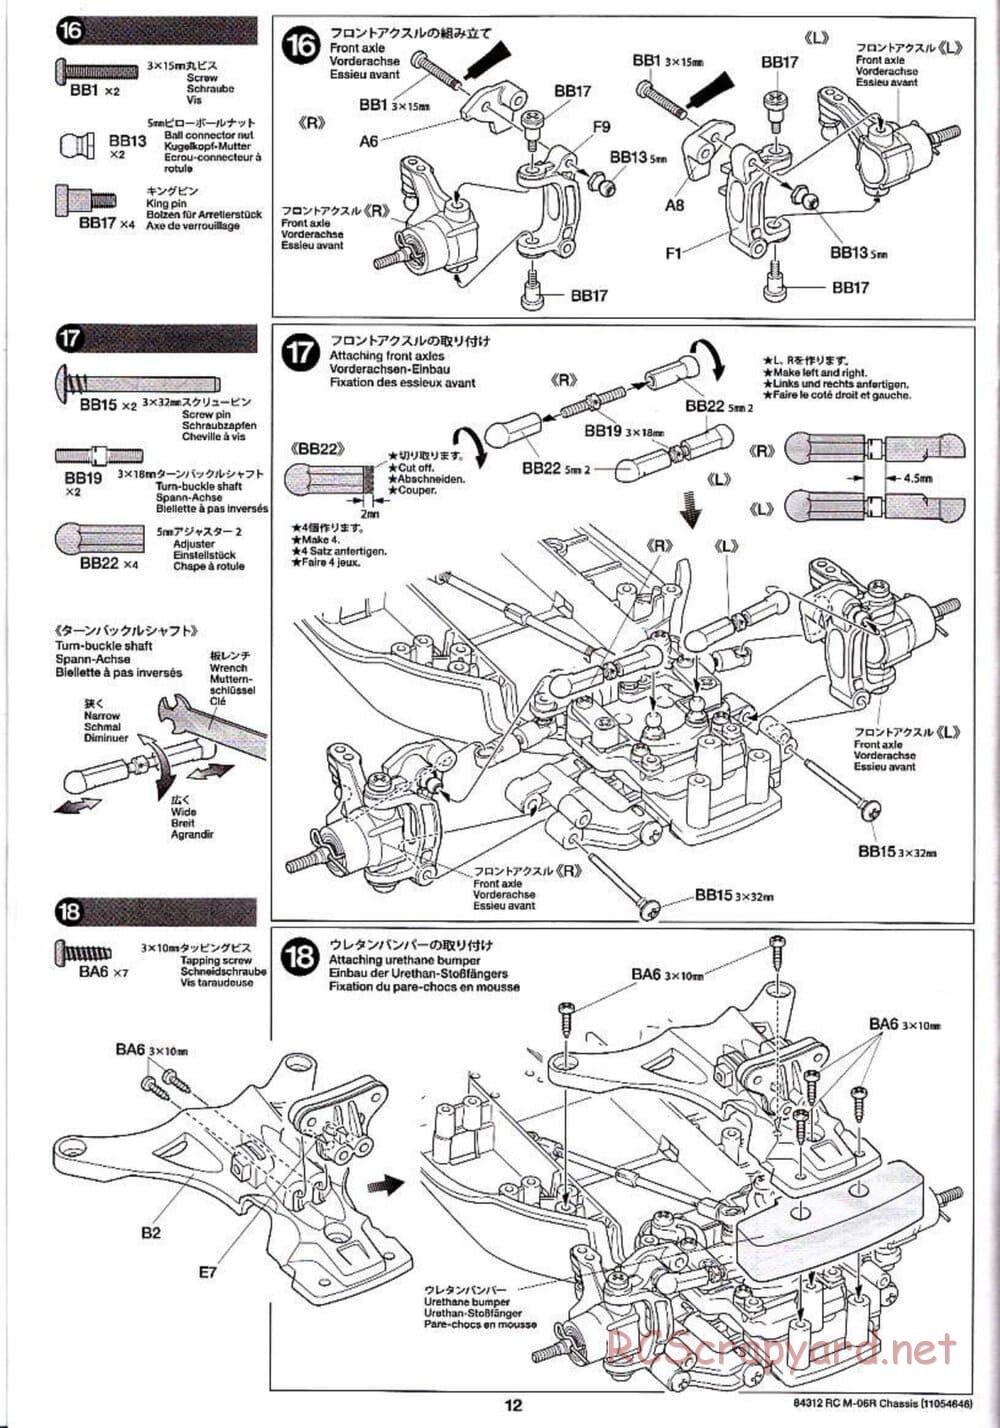 Tamiya - M-06R Chassis - Manual - Page 12